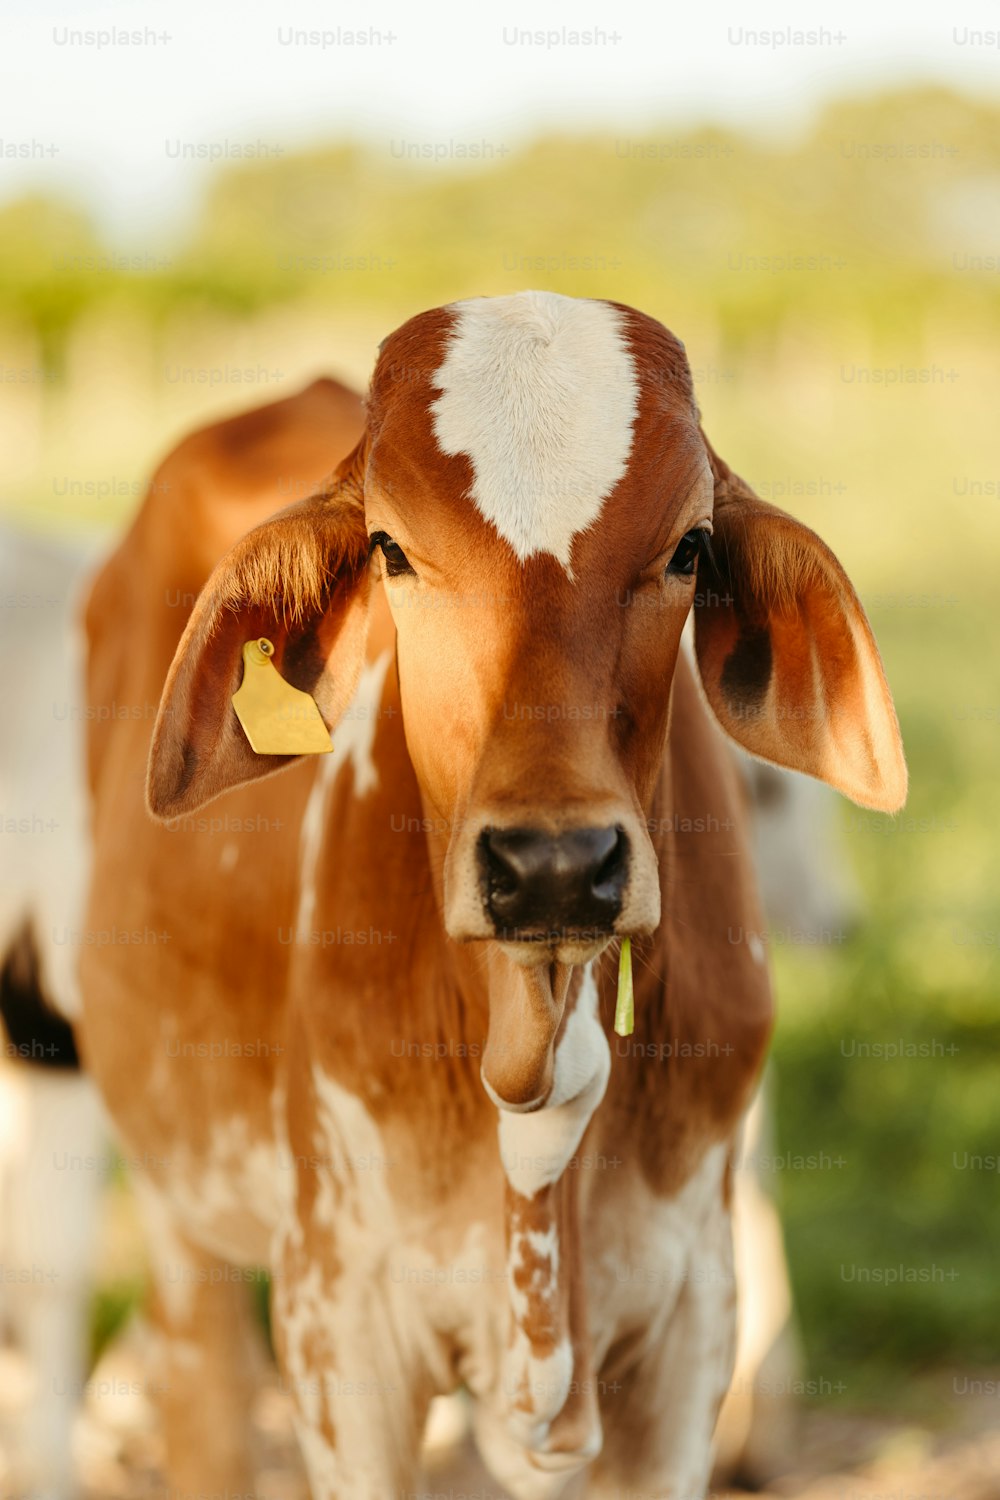 흙밭 위에 서 있는 갈색과 흰색 소